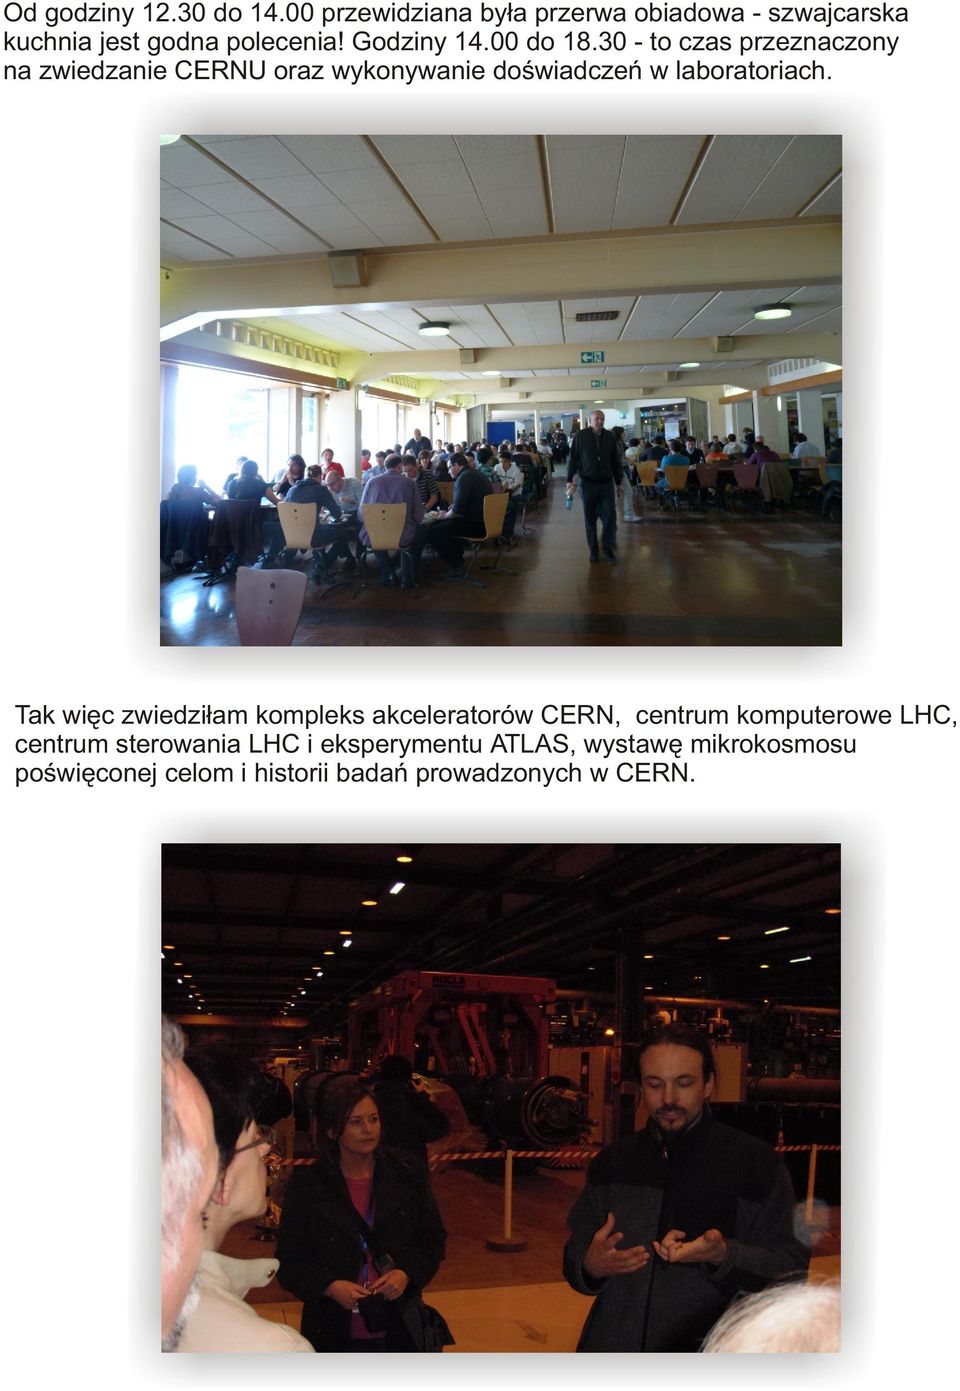 30 - to czas przeznaczony na zwiedzanie CERNU oraz wykonywanie doœwiadczeñ w laboratoriach.